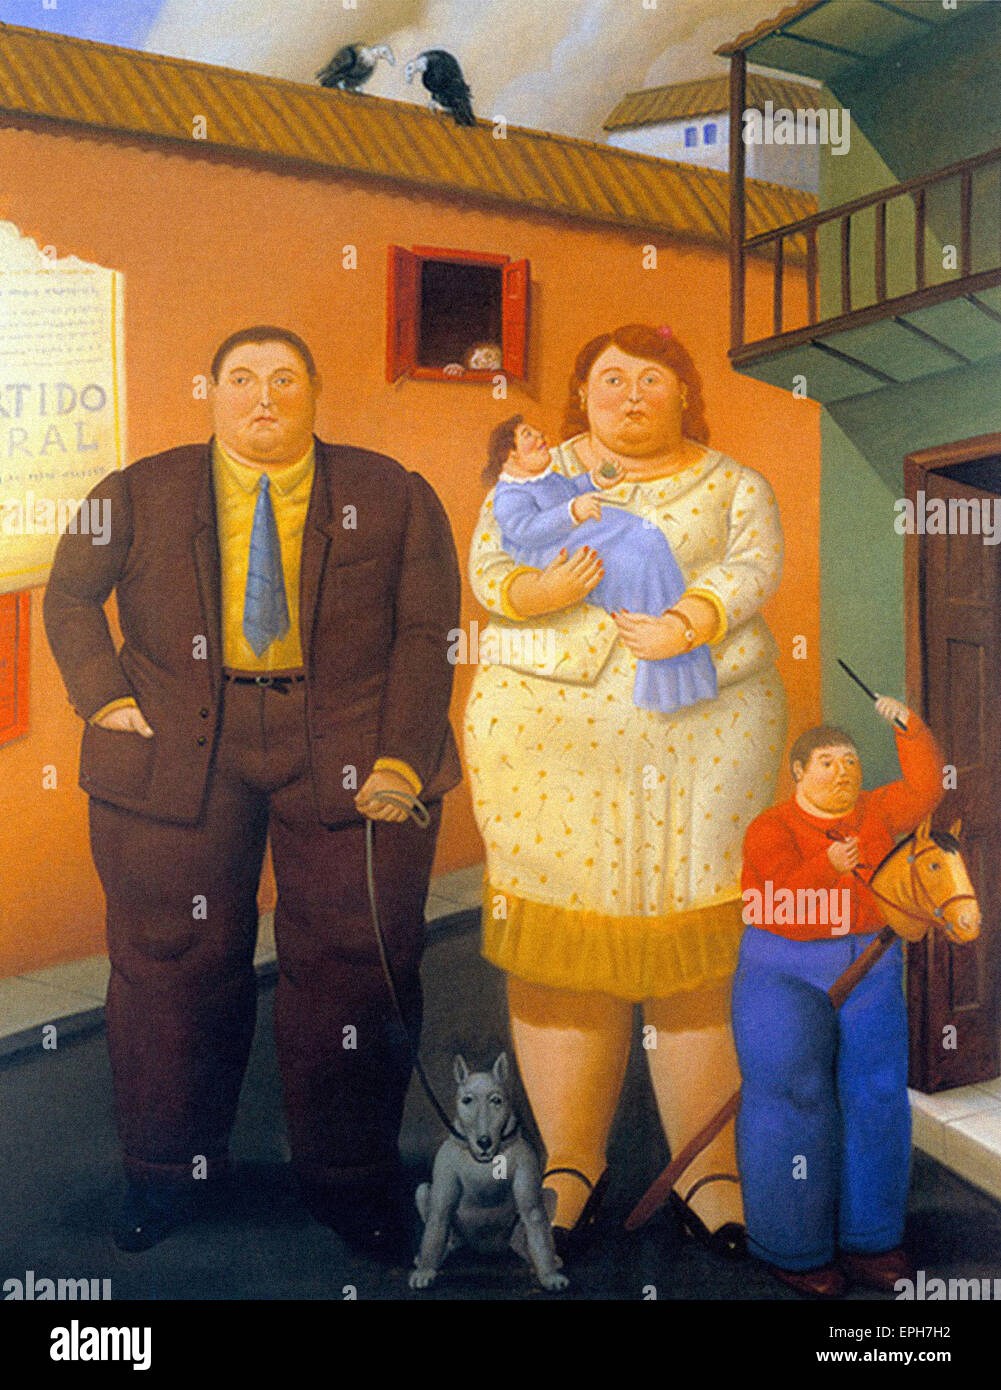 La familia de Fernando Botero Foto de stock